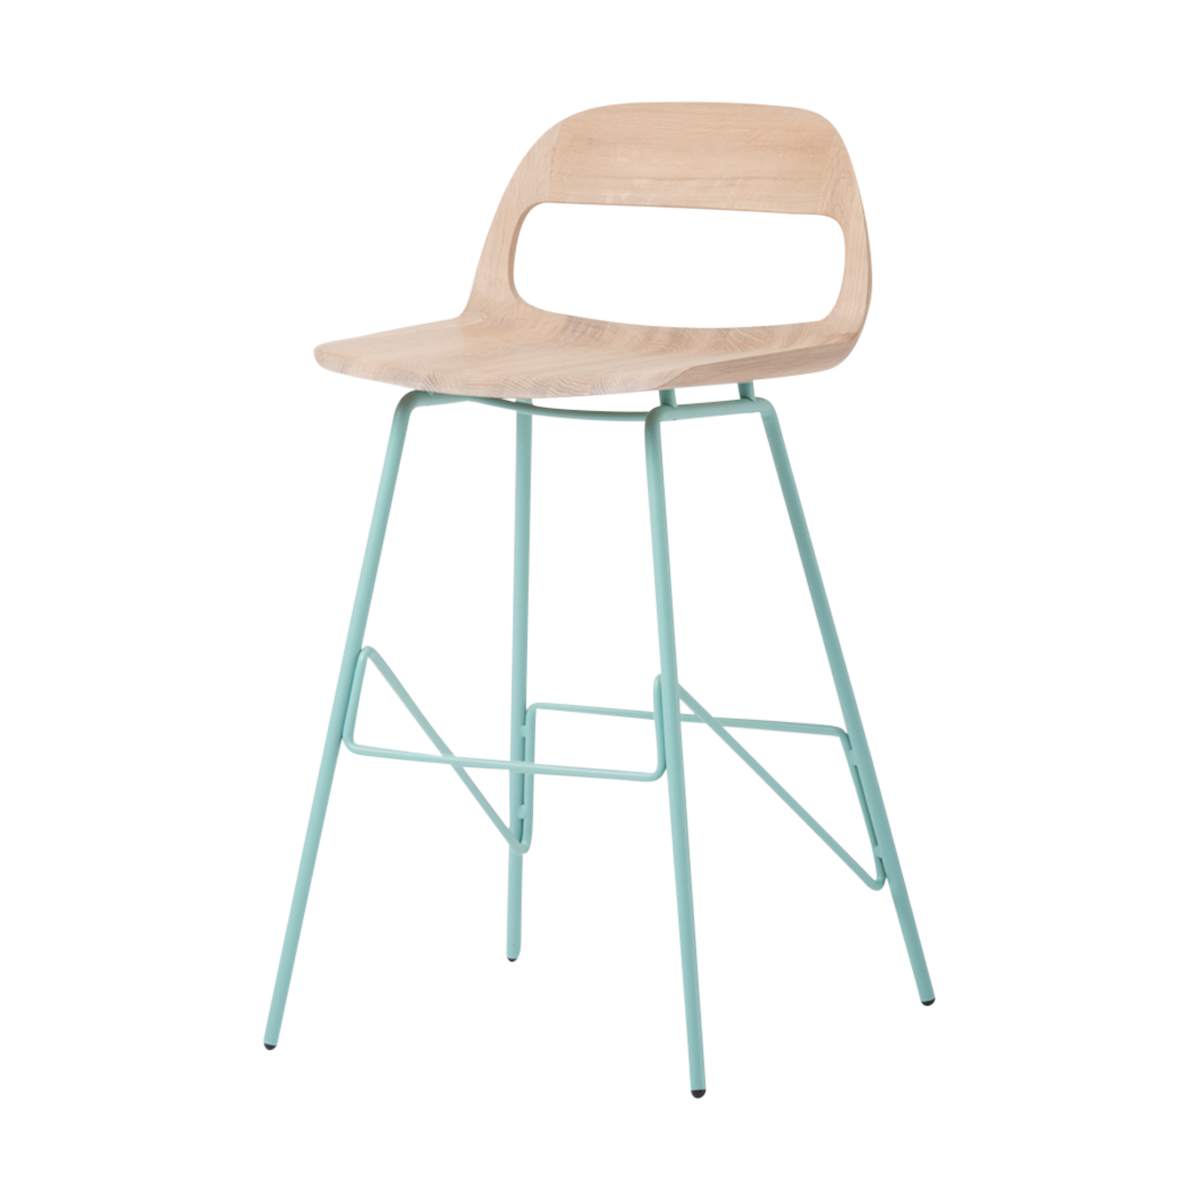 Leina bar chair - barkruk met houten zitting en groen onderstel - 65 cm